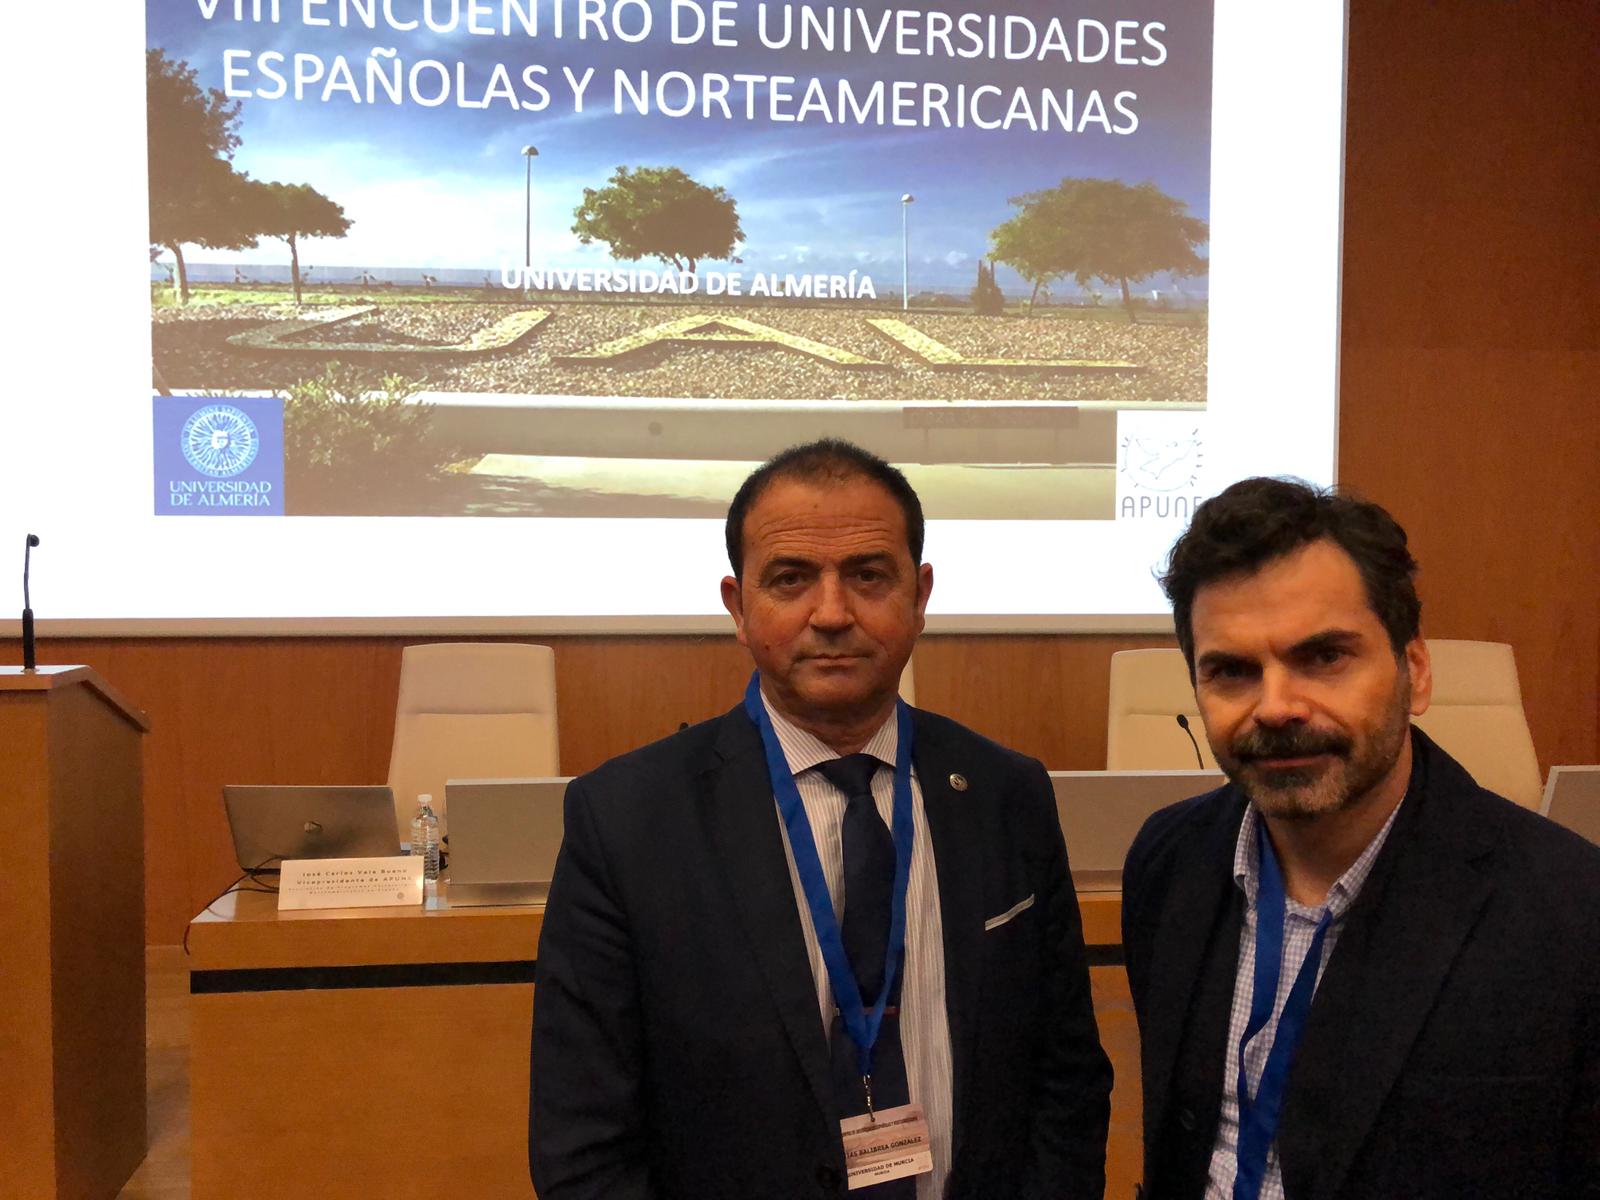 La UMU participa en el VIII Encuentro Entre Universidades Españolas y Norteamericanas APUNE